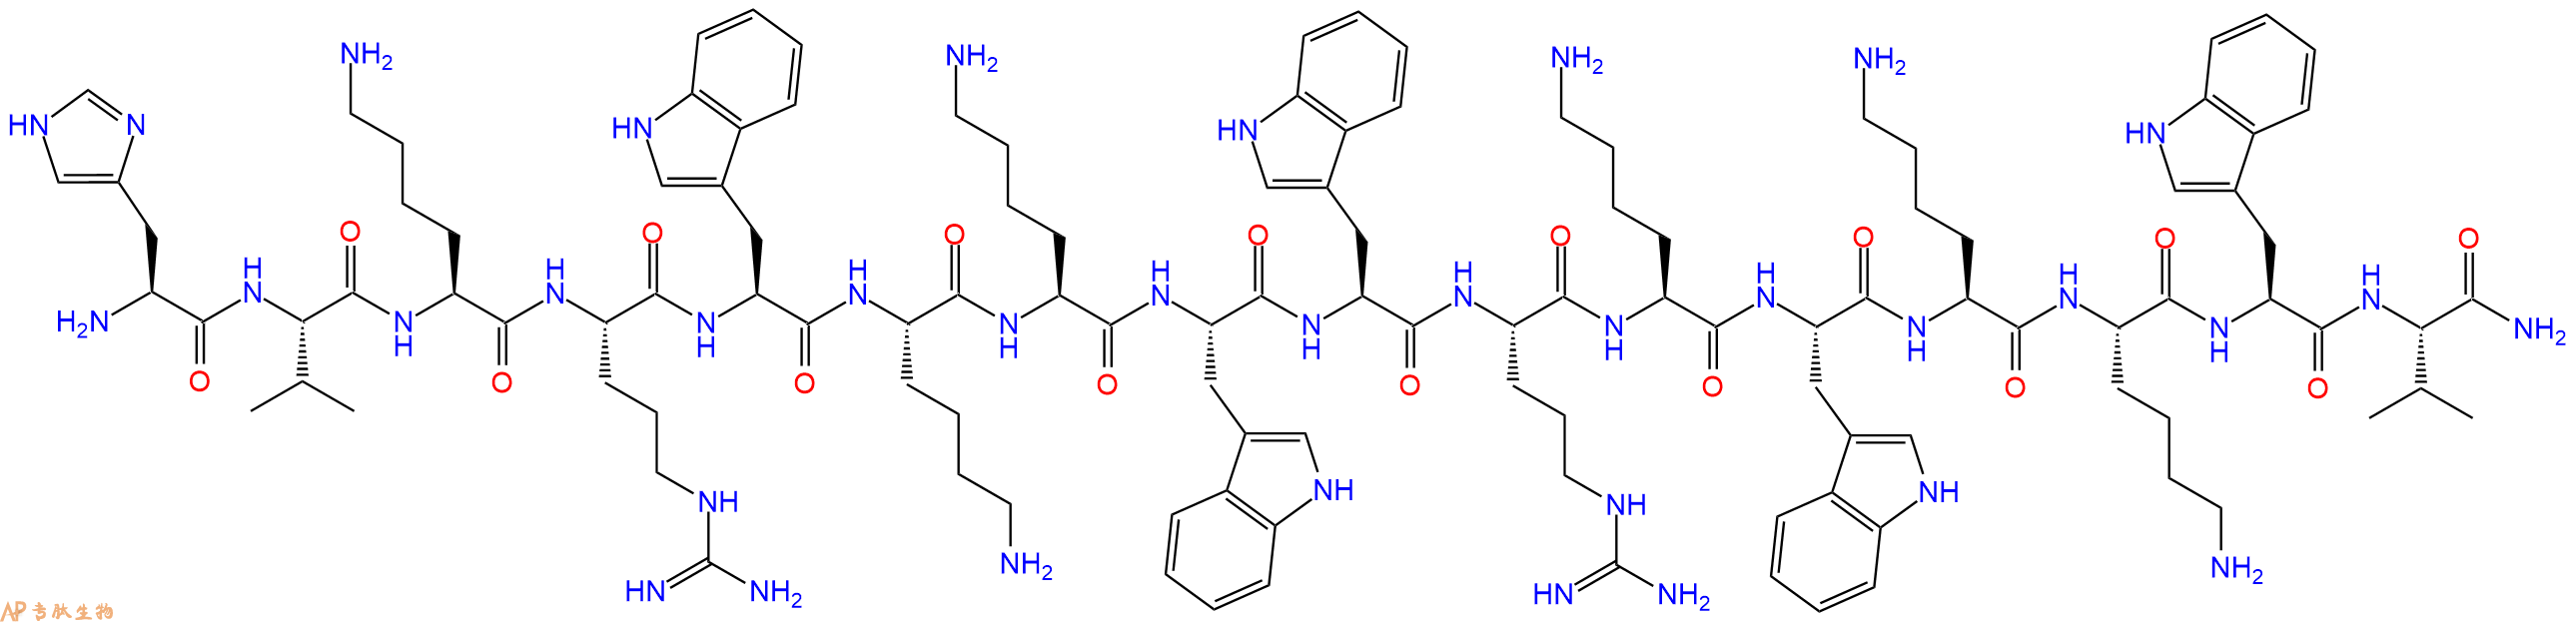 专肽生物产品十六肽HVKRWKKWWRKWKKWV-NH2